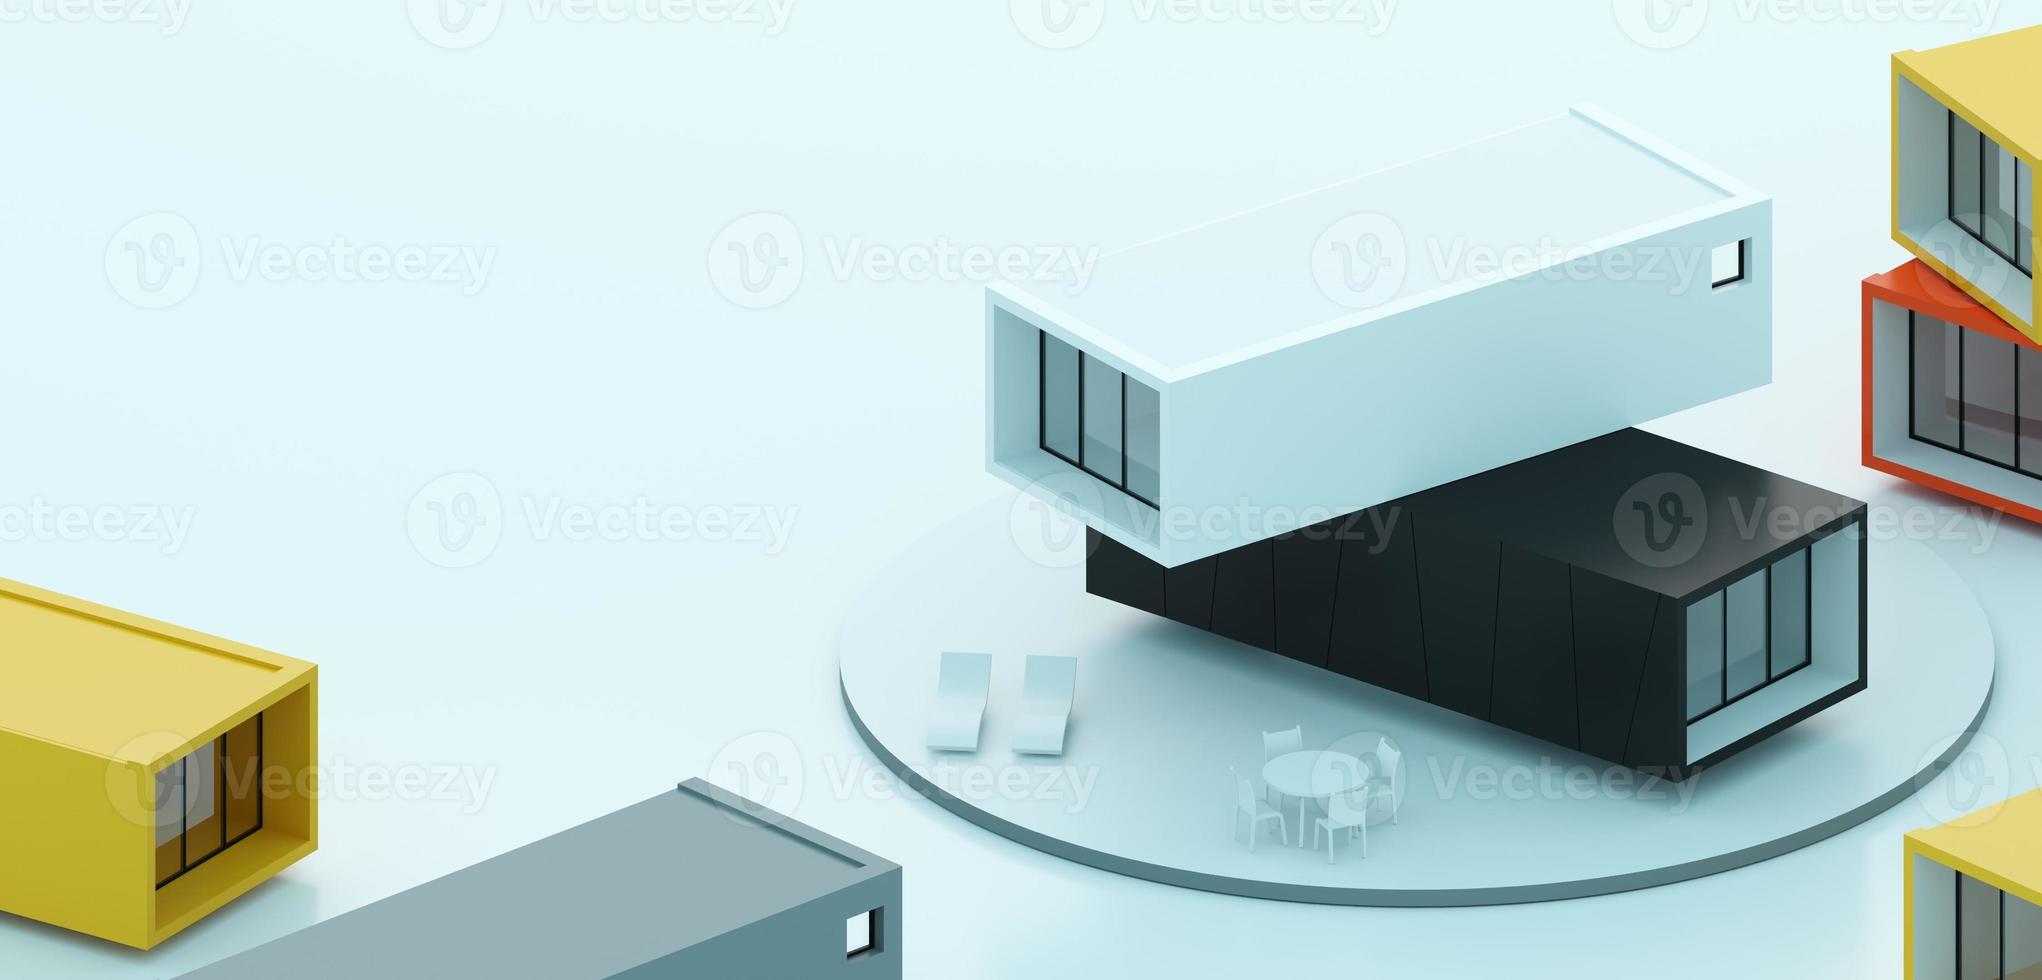 Modelllayout mit modularen Containerfarbenhäusern foto